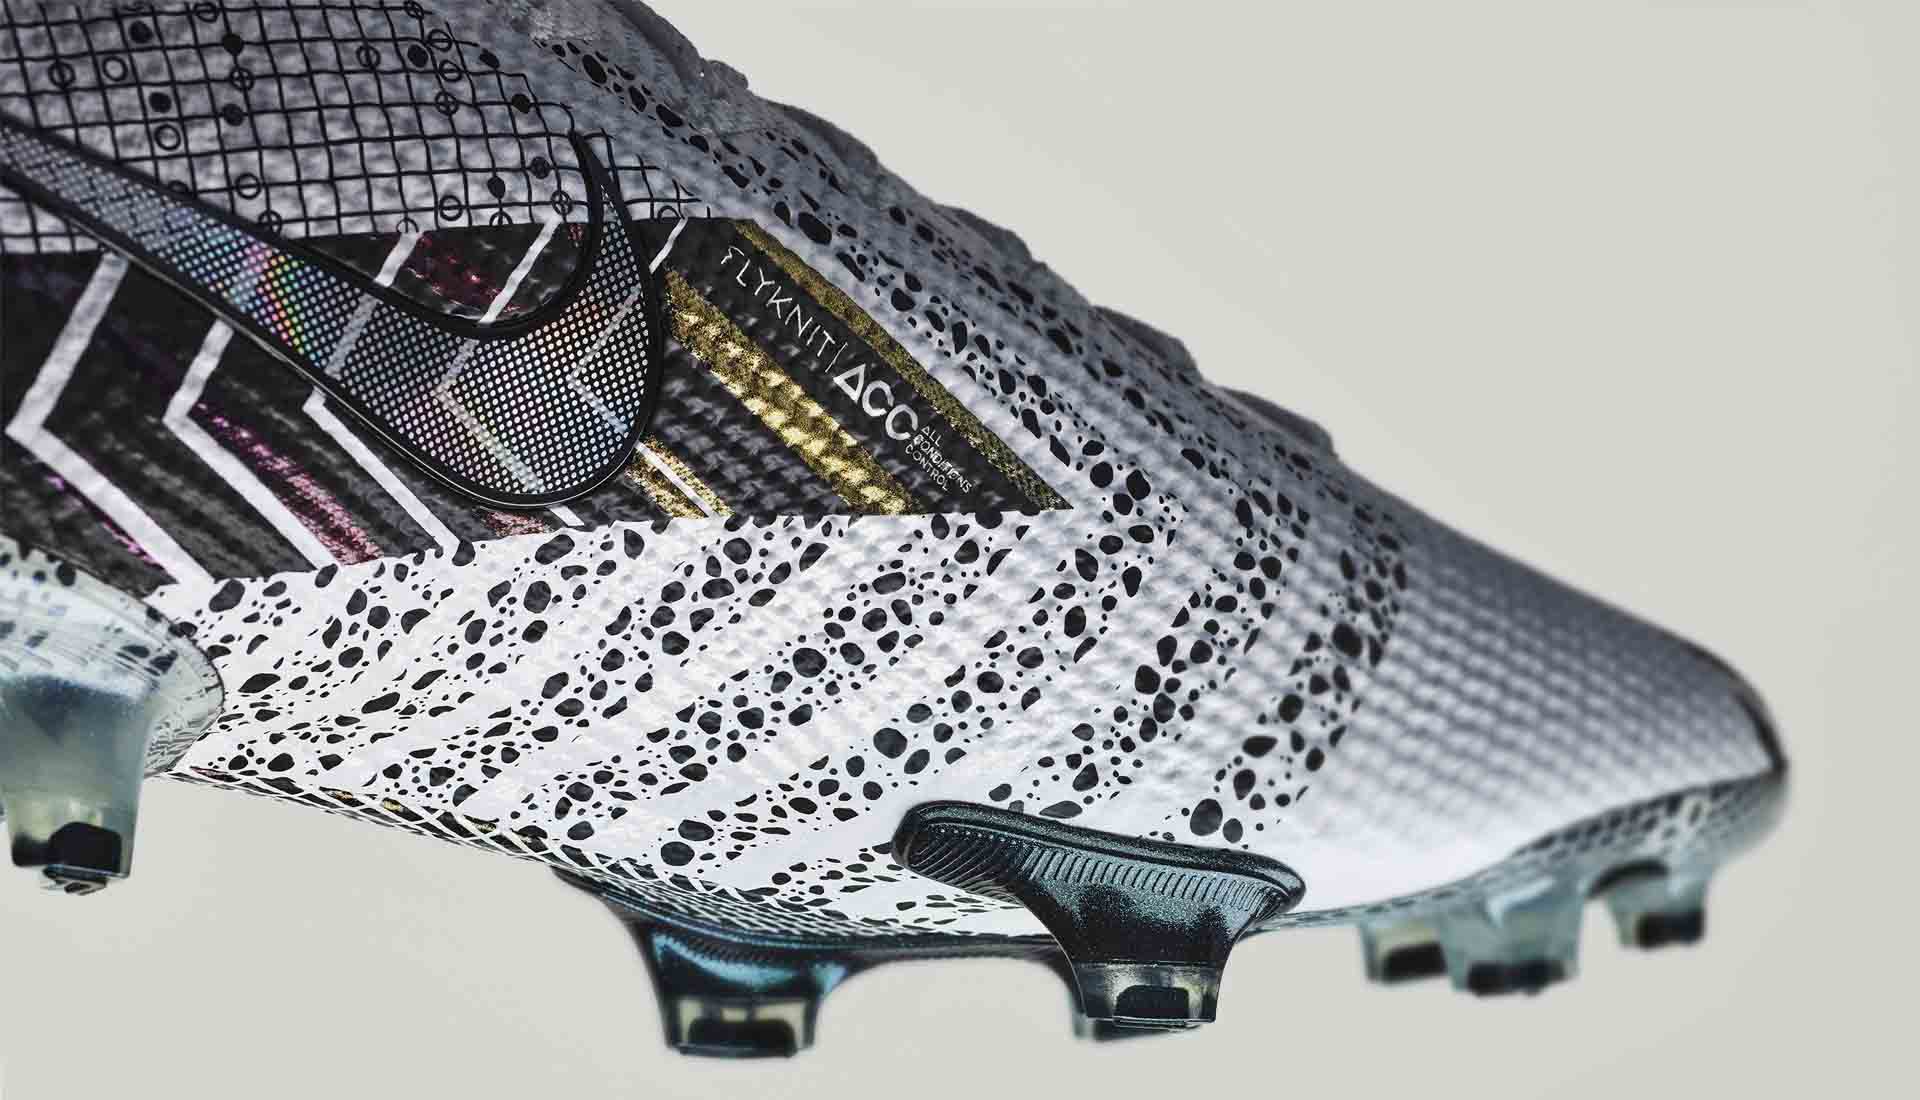 Các dấu chấm đen giống với Nike Mercurial Safari xuất hiện nhiều trên thân giày